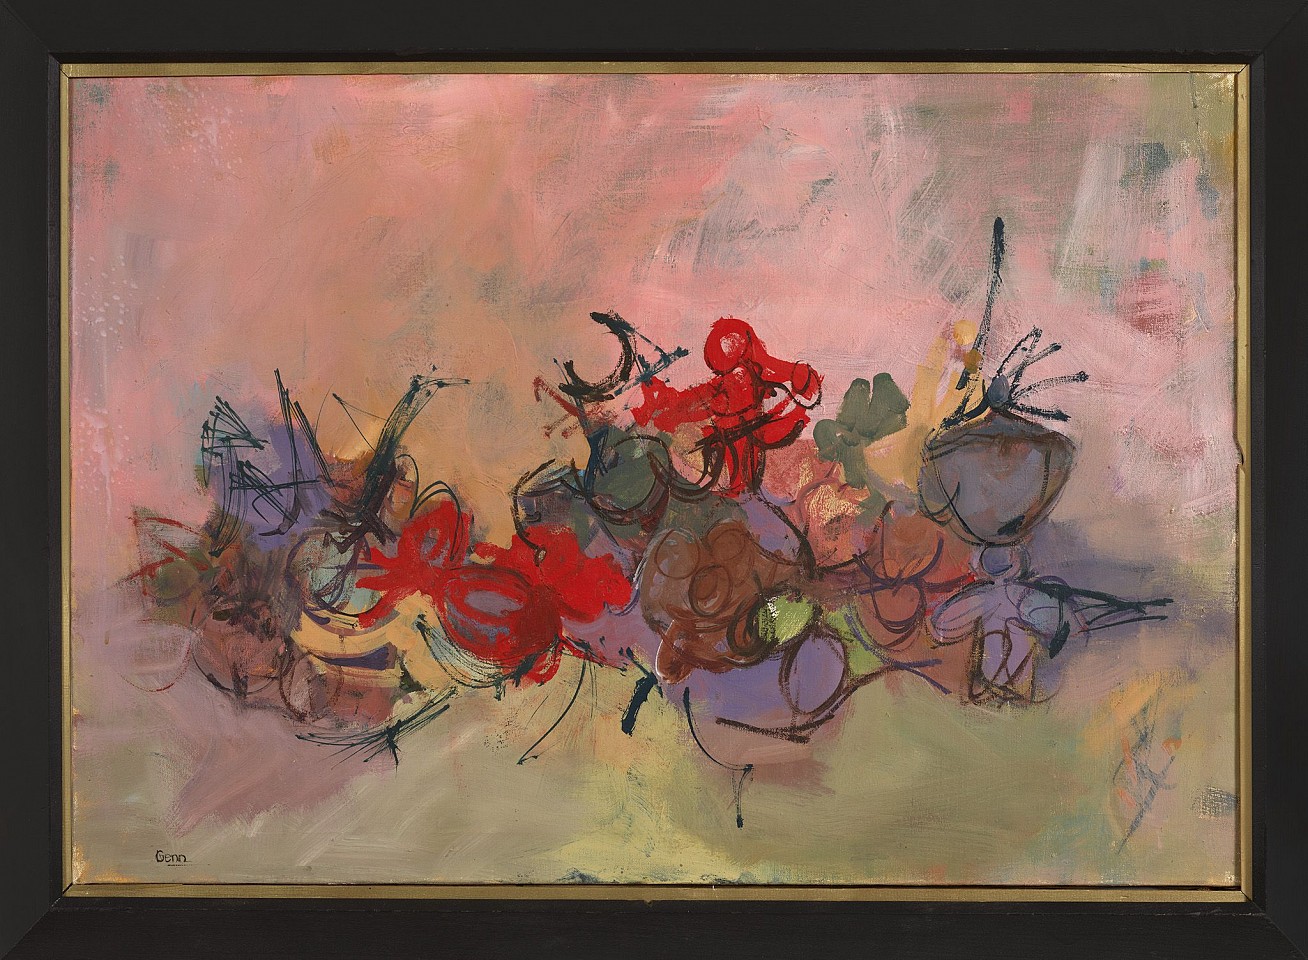 Nancy Genn, Untitled, 1952
Oil on canvas, 25 x 36 in. (63.5 x 91.4 cm)
GEN-00001